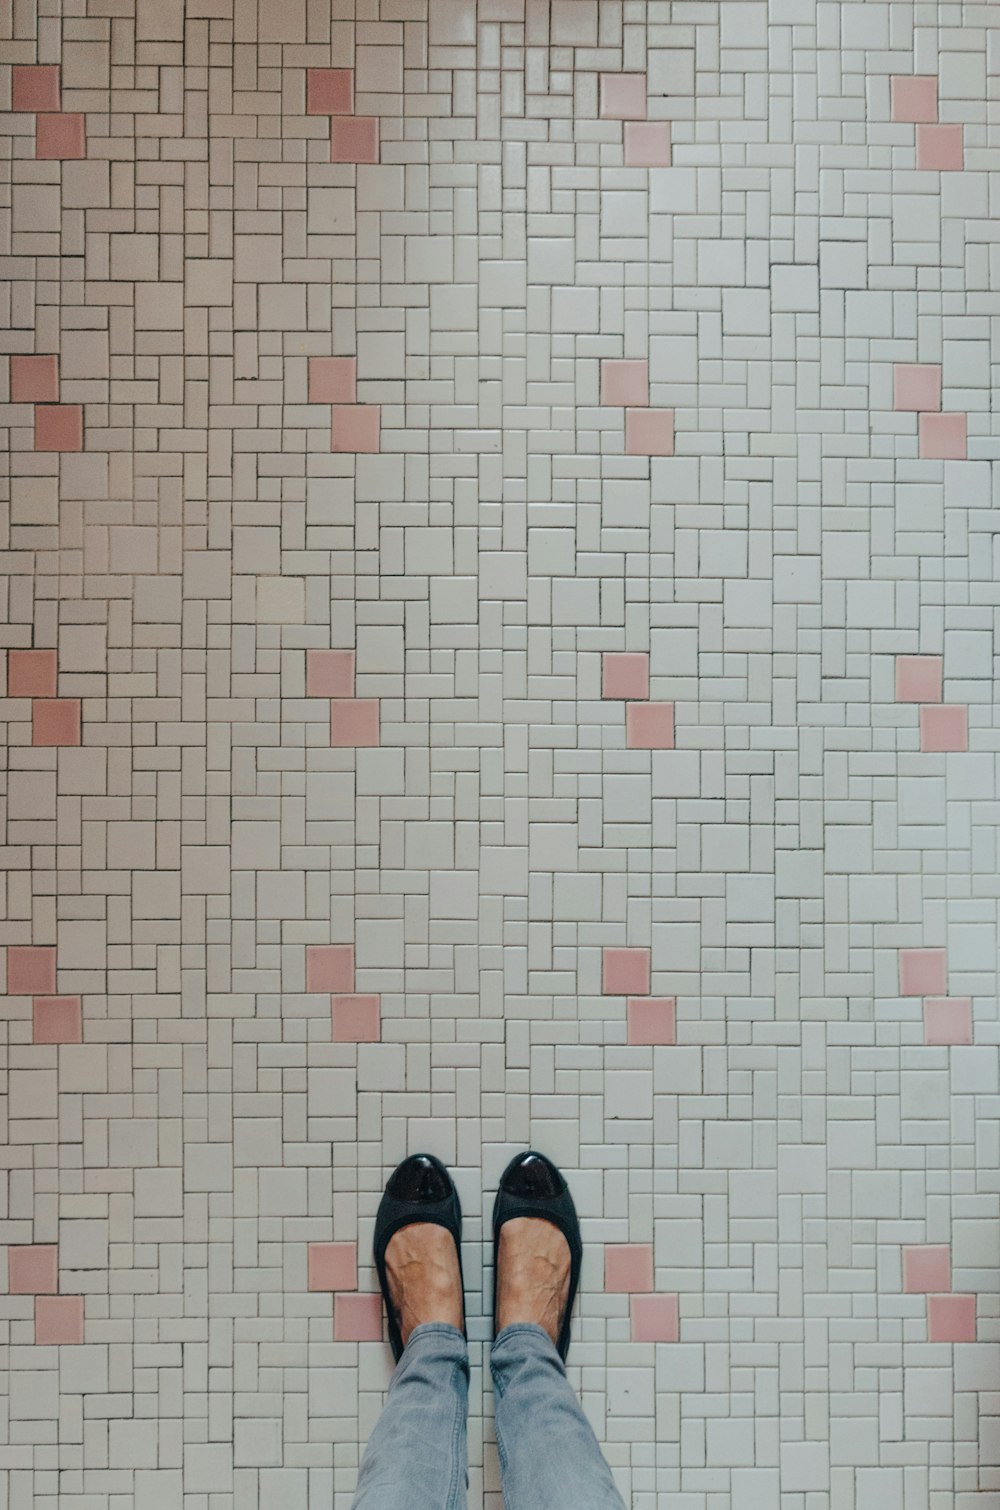 Una persona parada frente a una pared de azulejos